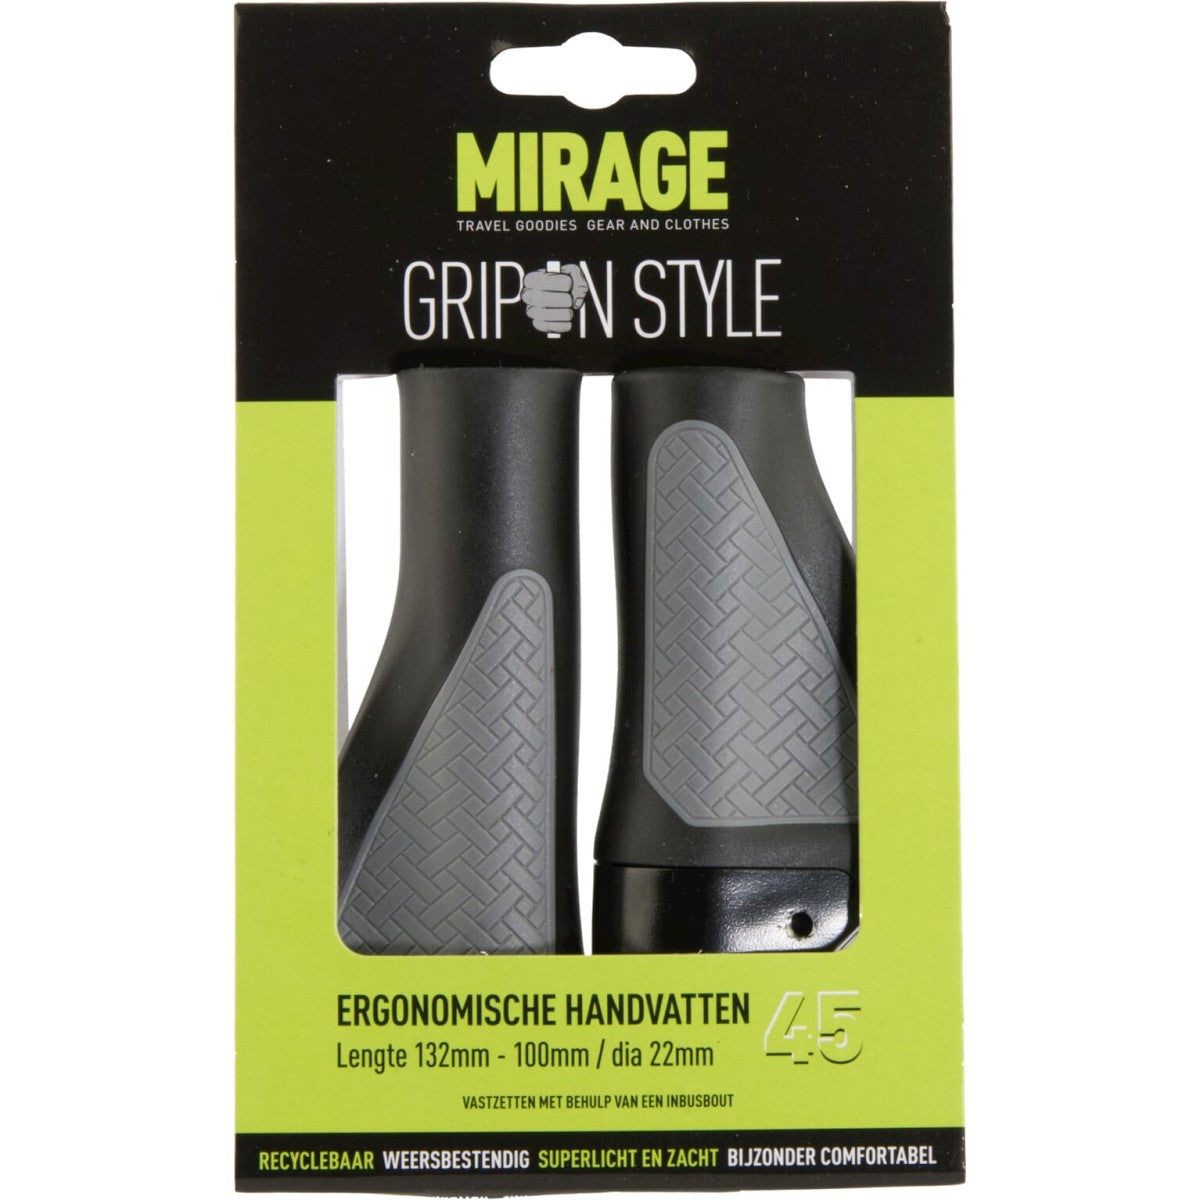 Mirage handvatten Grips in style 132 100 zw. gr. blister